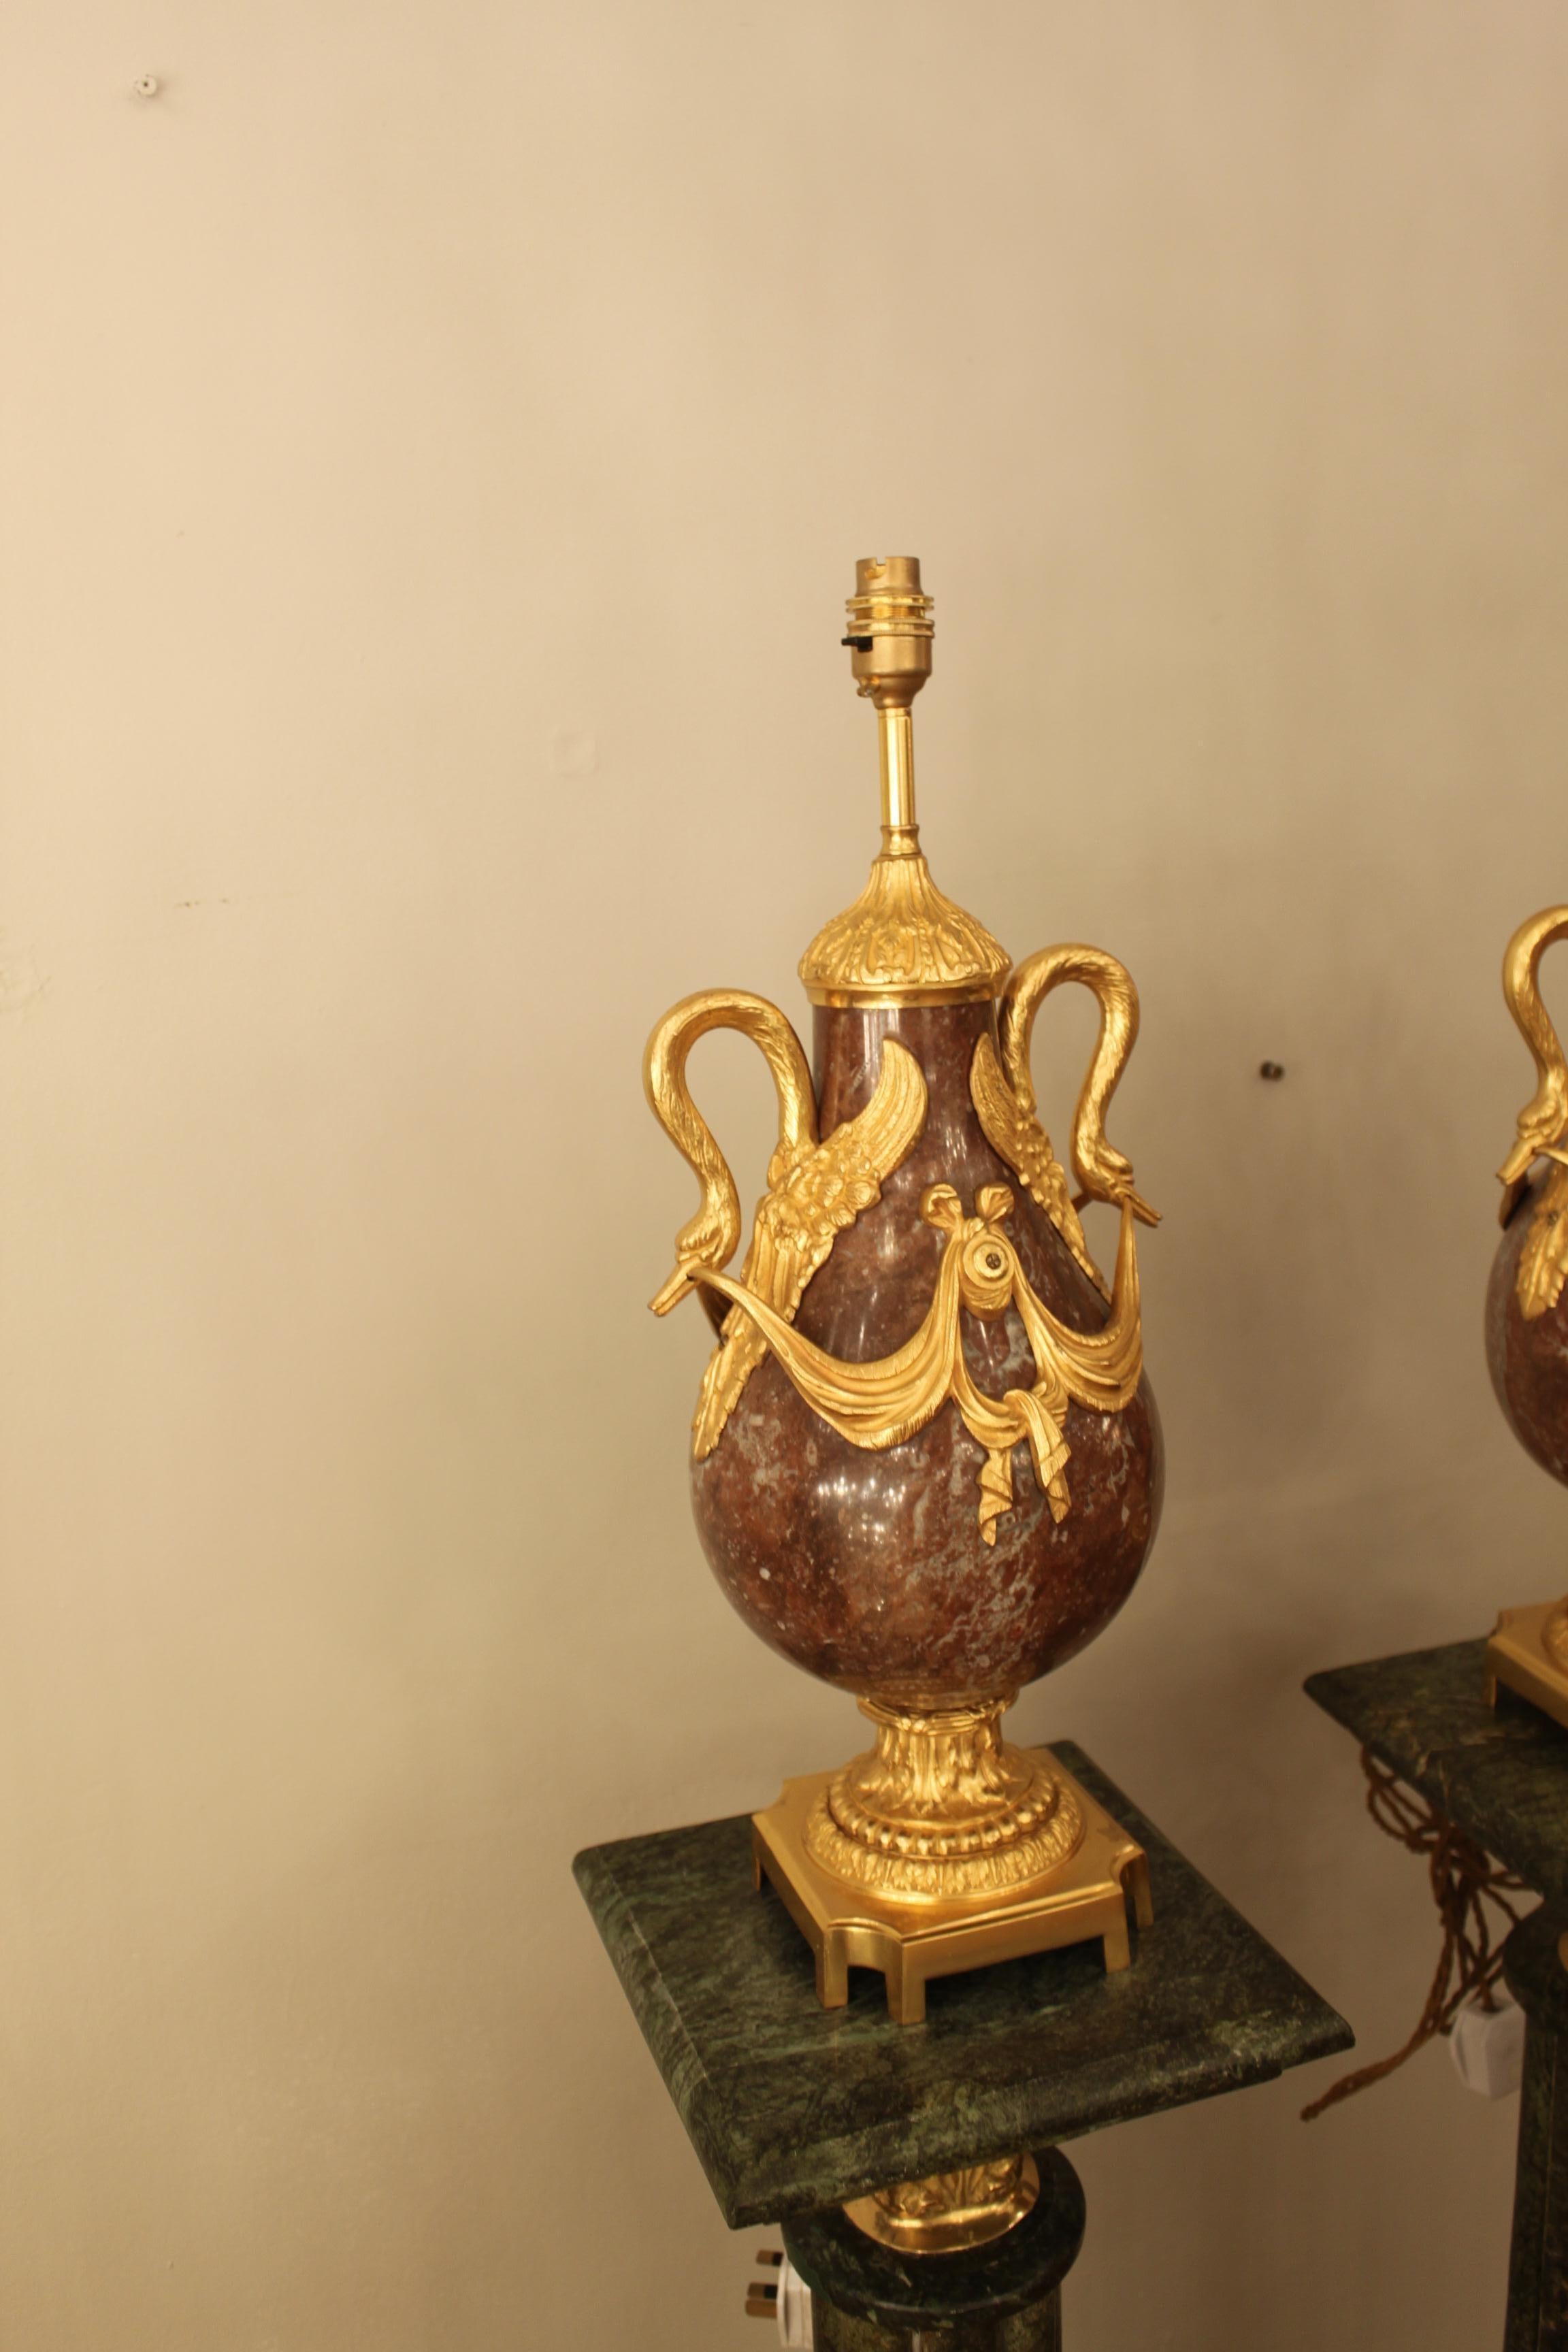 Die um 1880 in Frankreich gefertigten Kassetten sind aus rotem Marmor geschnitzt und haben einen Sockel aus Bronze und dekorative Bronzebeschläge. Die Kassetten wurden in Tischlampen umgewandelt und beide haben weiße, plissierte Lampenschirme. Die